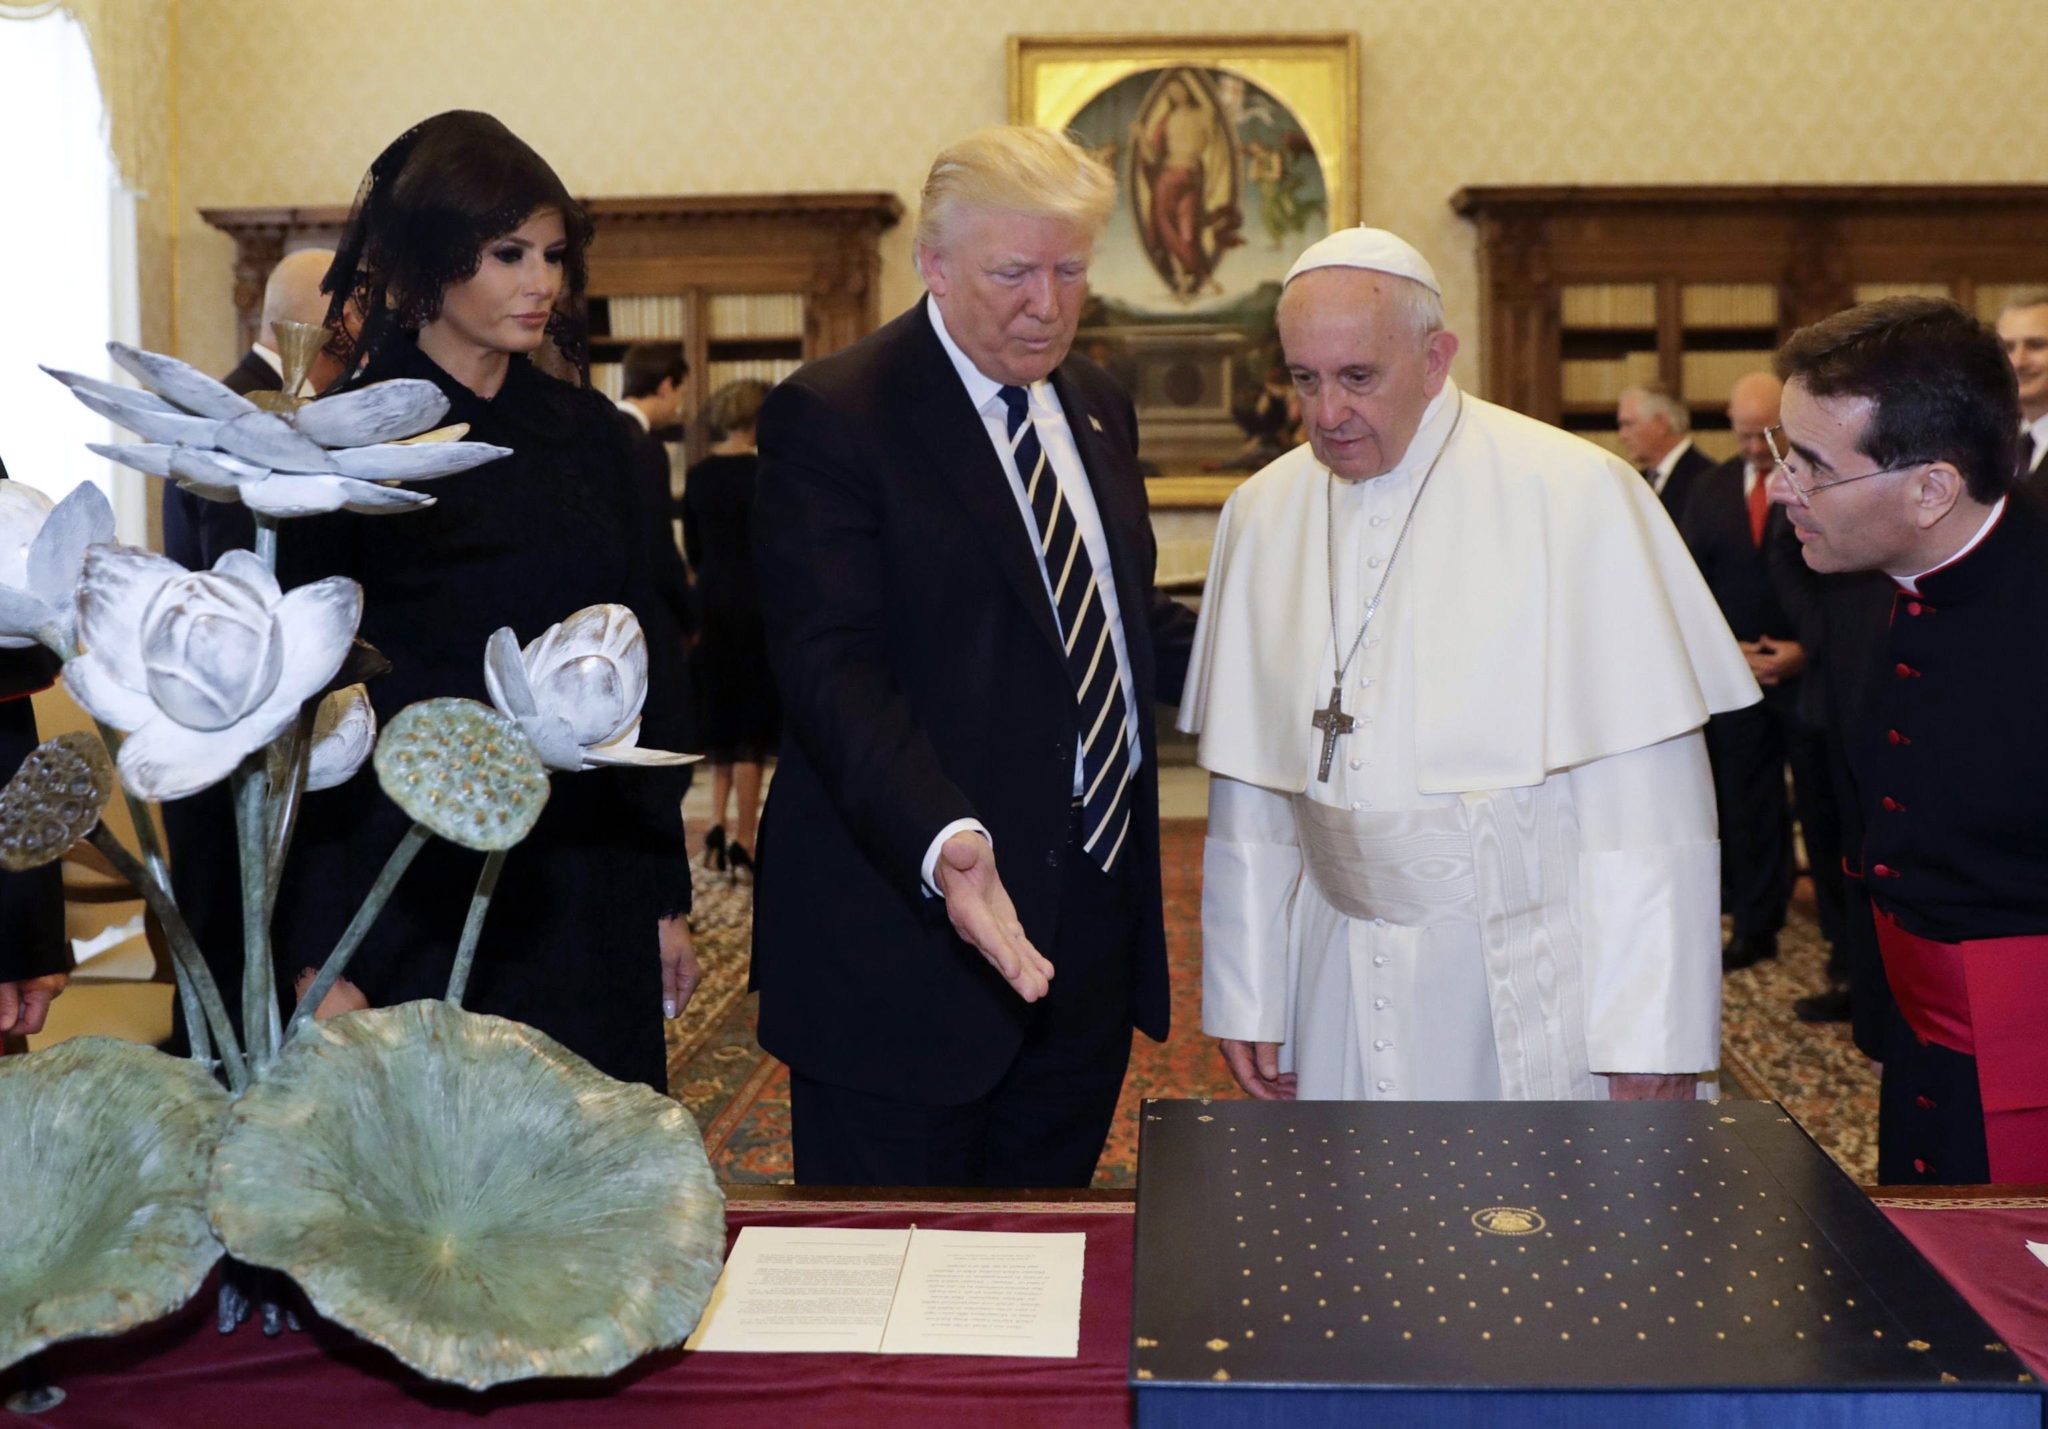 Włochy: papież Franciszek przyjął na audiencji prezydenta USA - Donalda J. Trumpa (foto. PAP/EPA/ALESSANDRA TARANTINO)